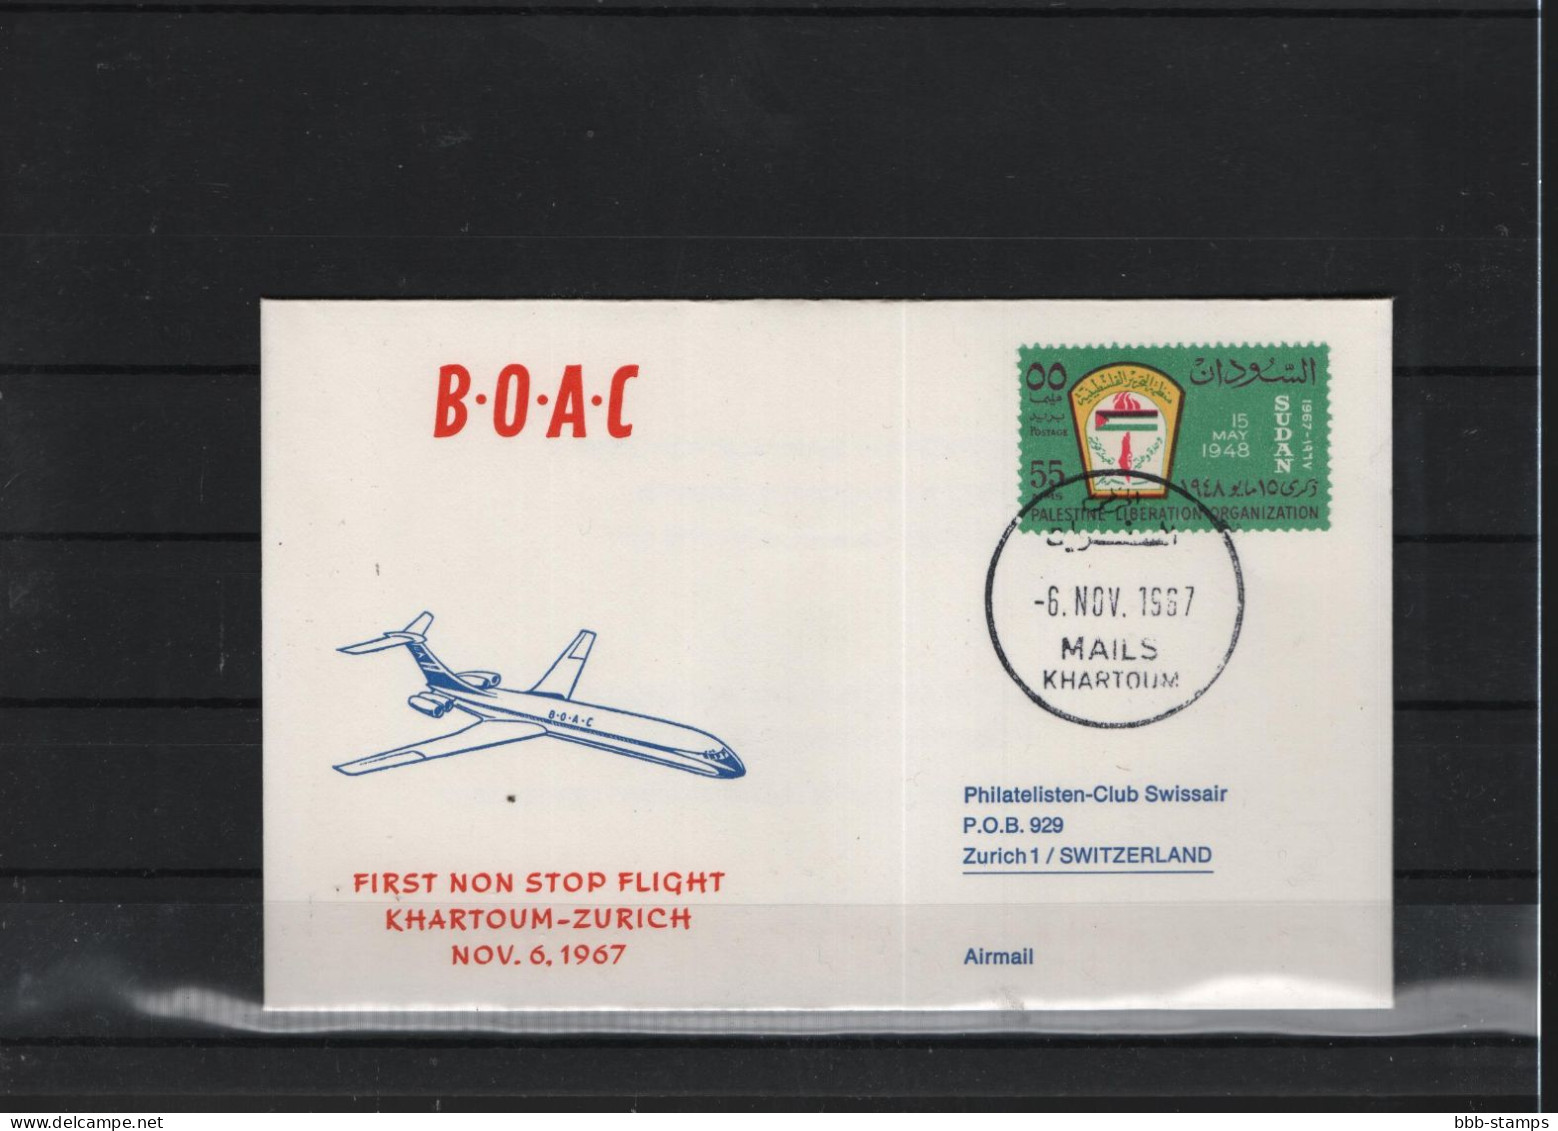 Schweiz Luftpost FFC BOAC 6.11.1967 Khartoum - Zürich - Premiers Vols